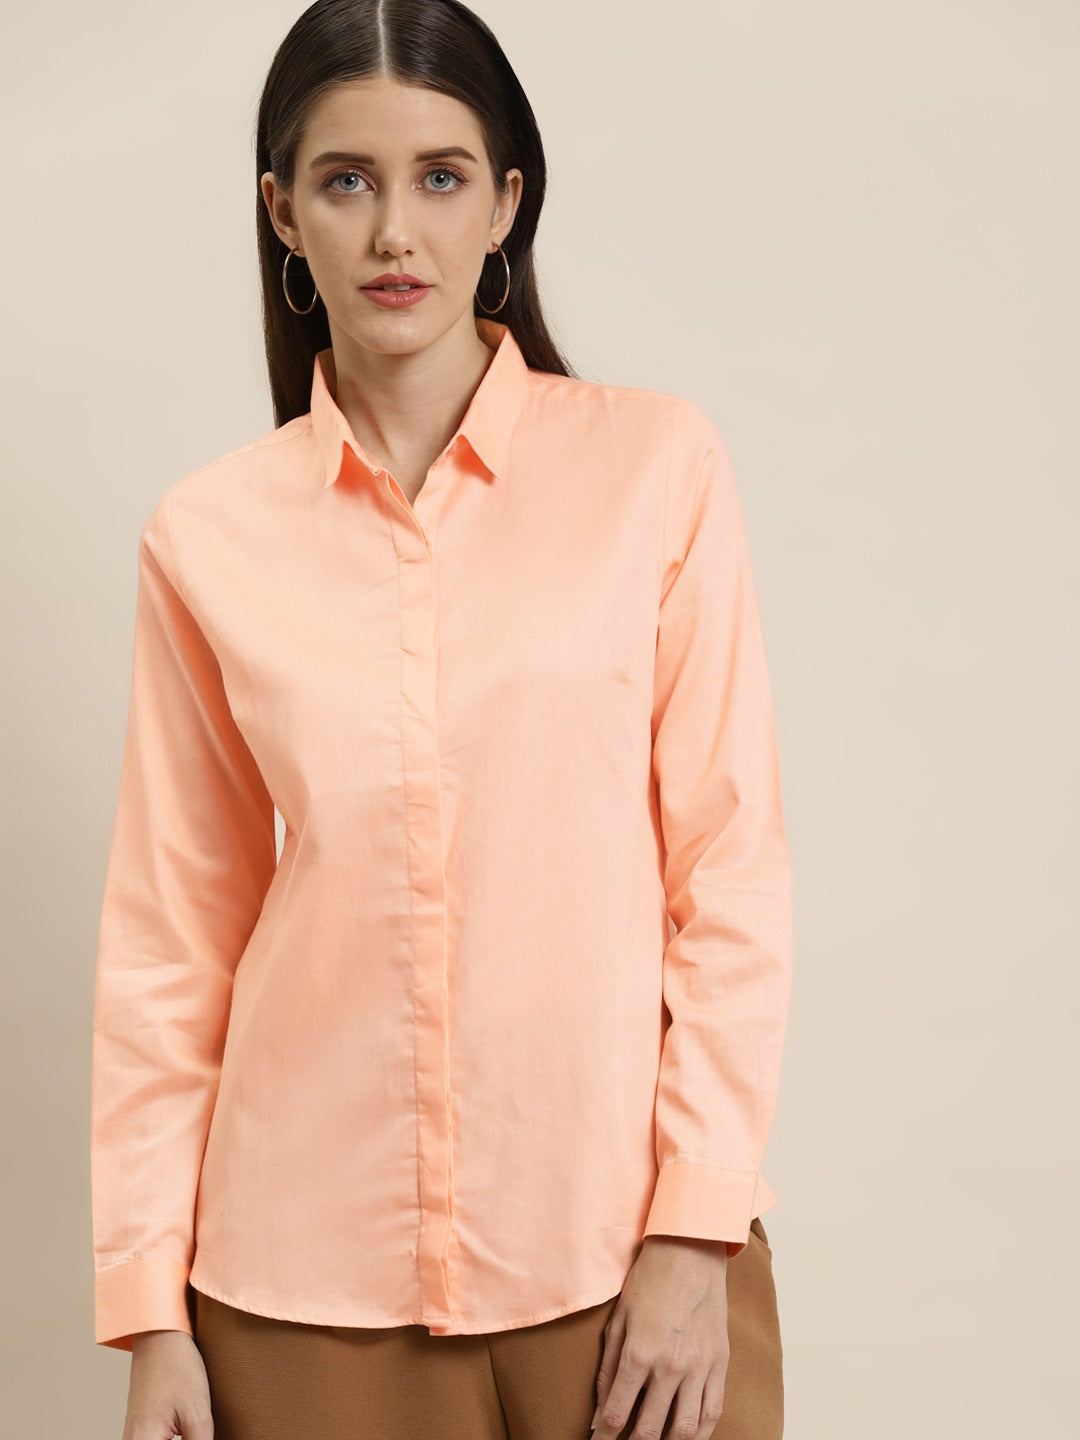  Womens Peach Shirt